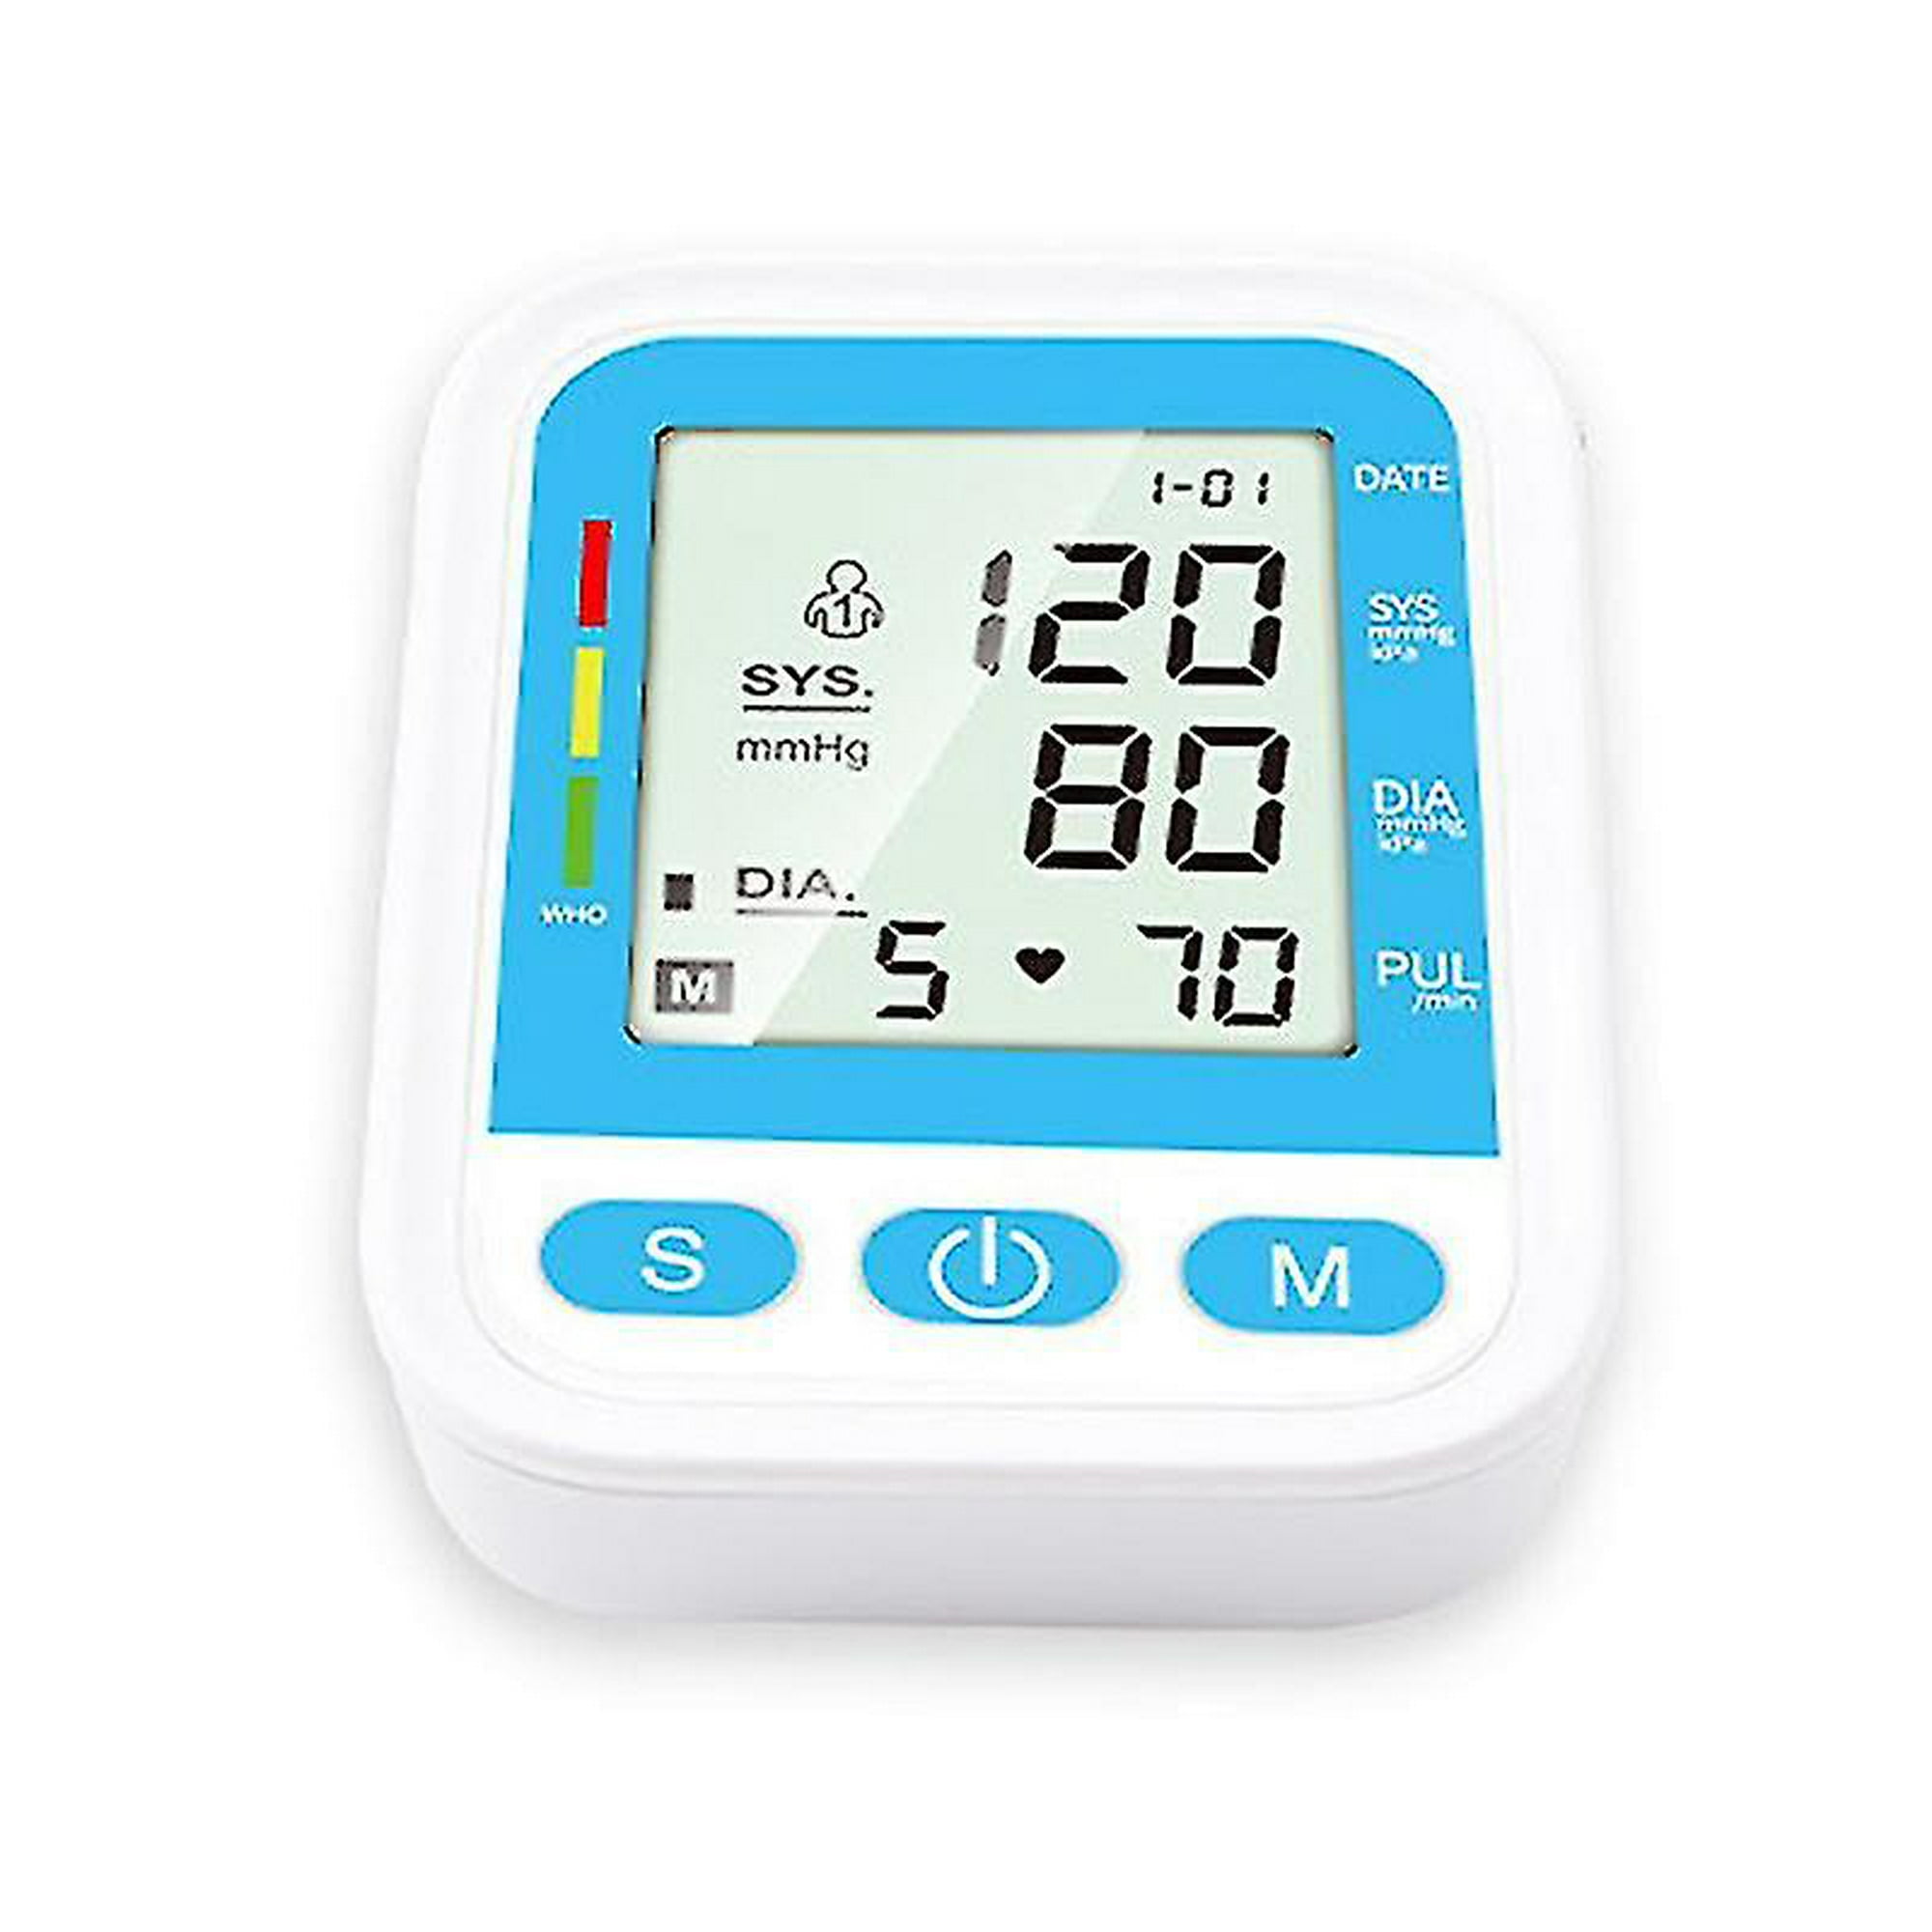 Comprar Monitor de presión arterial de brazo, tonómetro